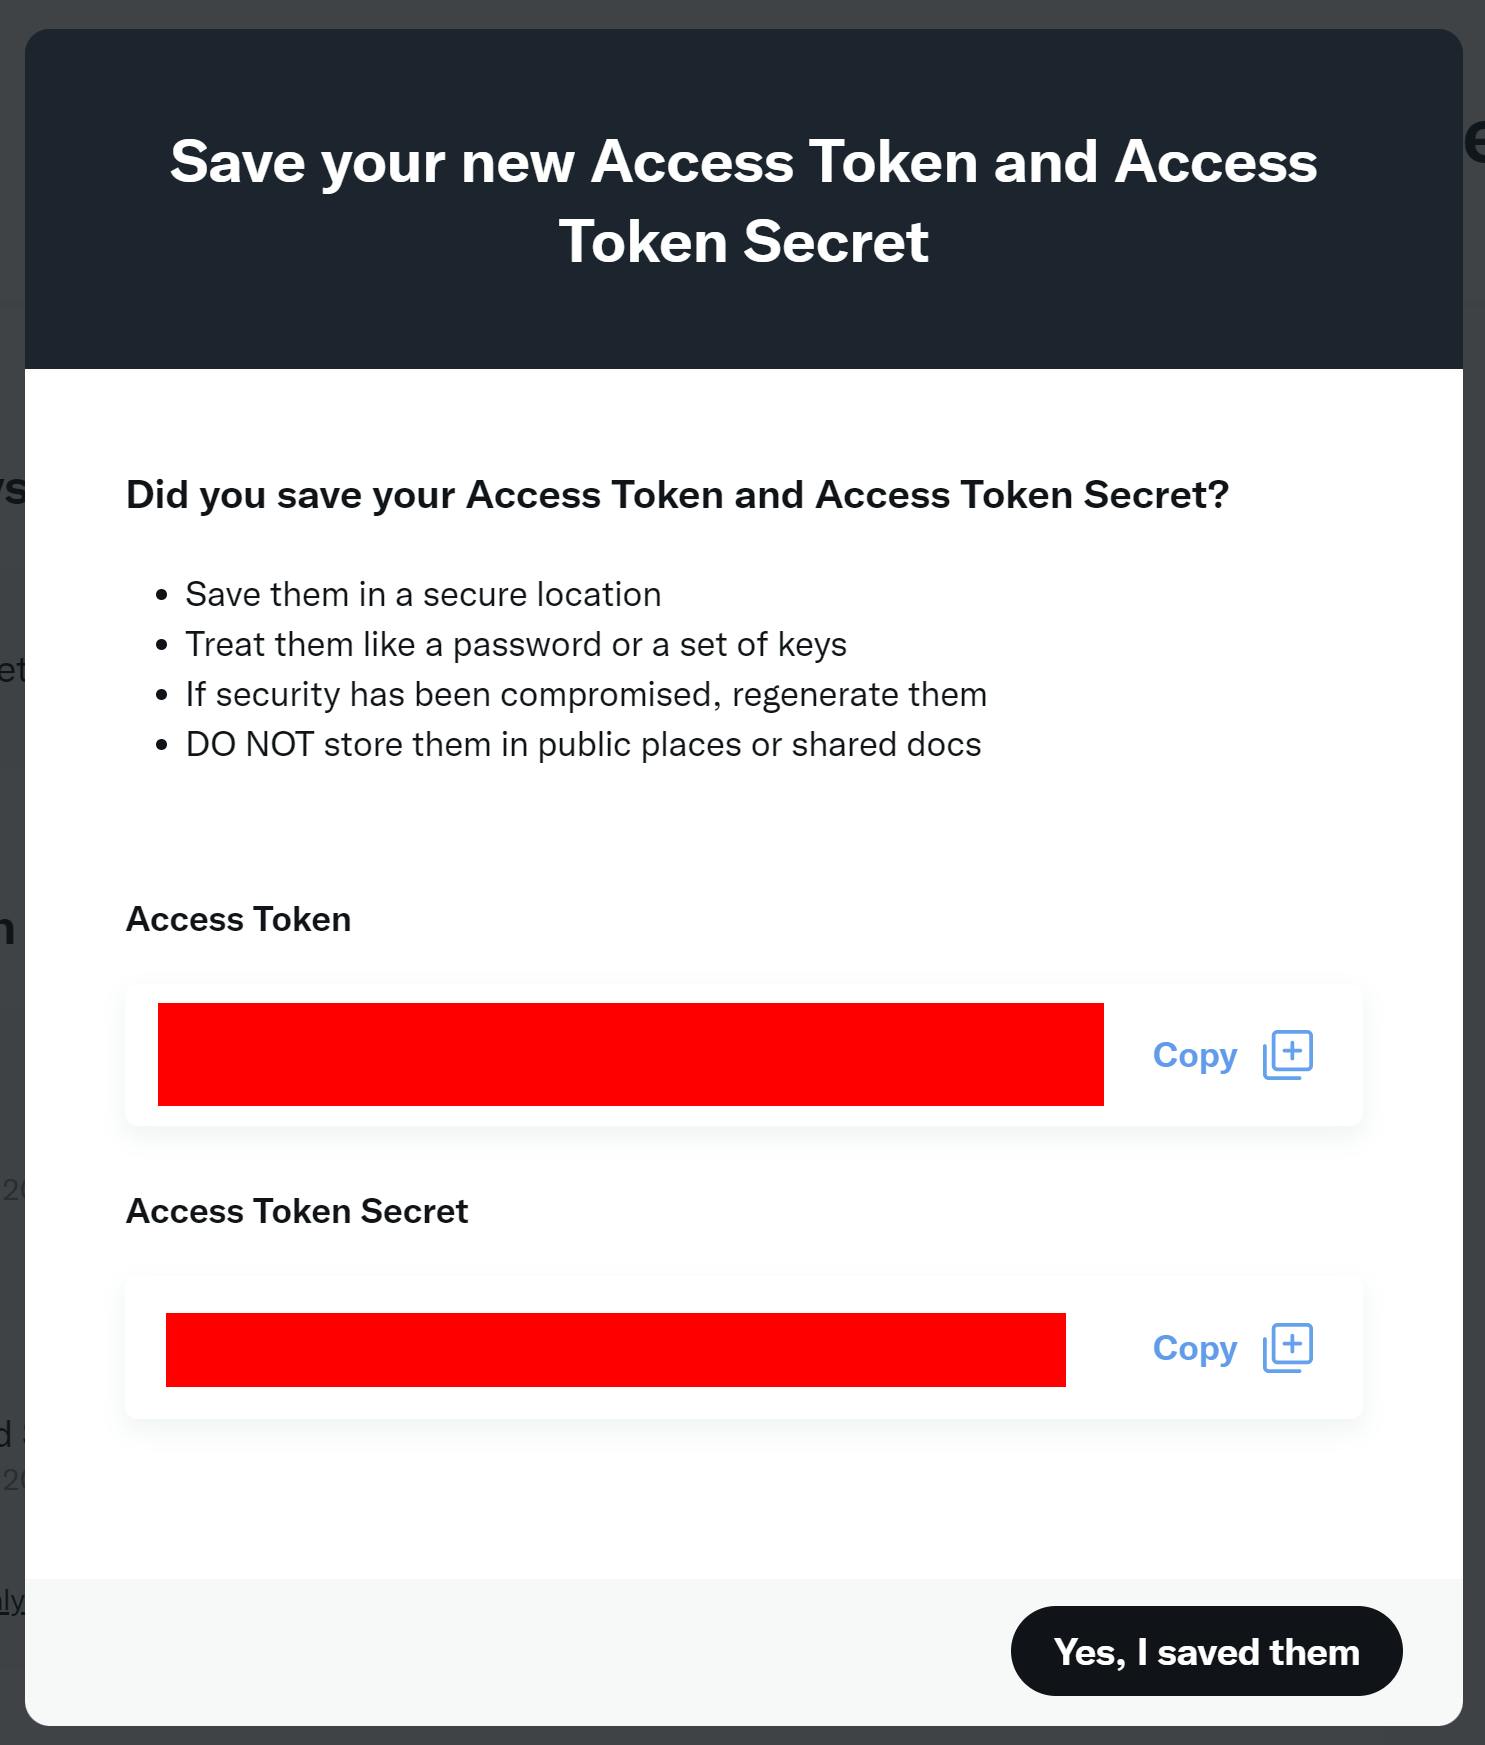 Your access token